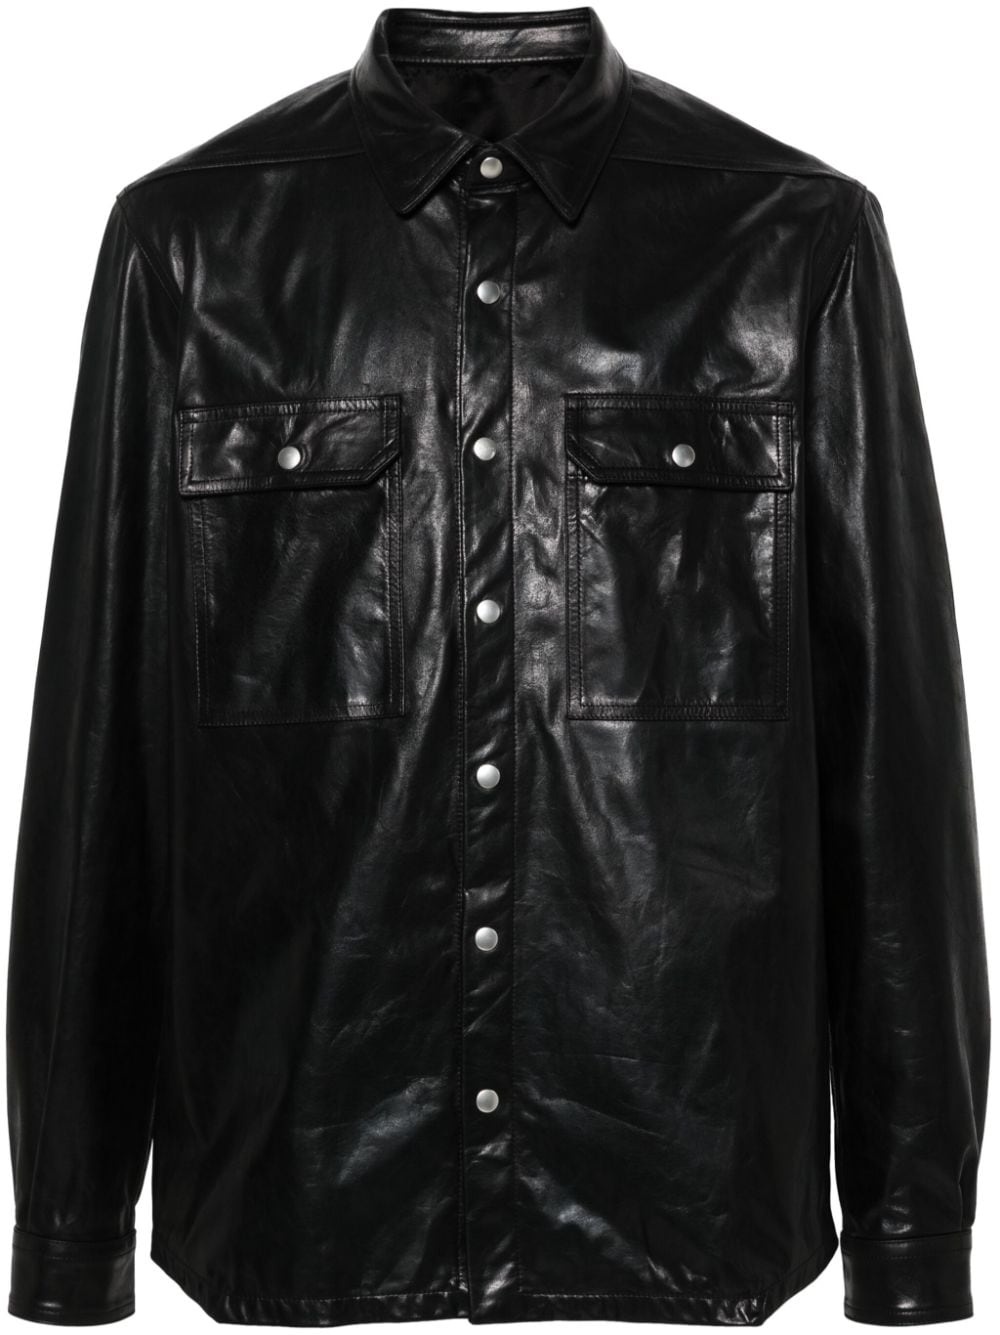 Outershirt leather jacket - 1